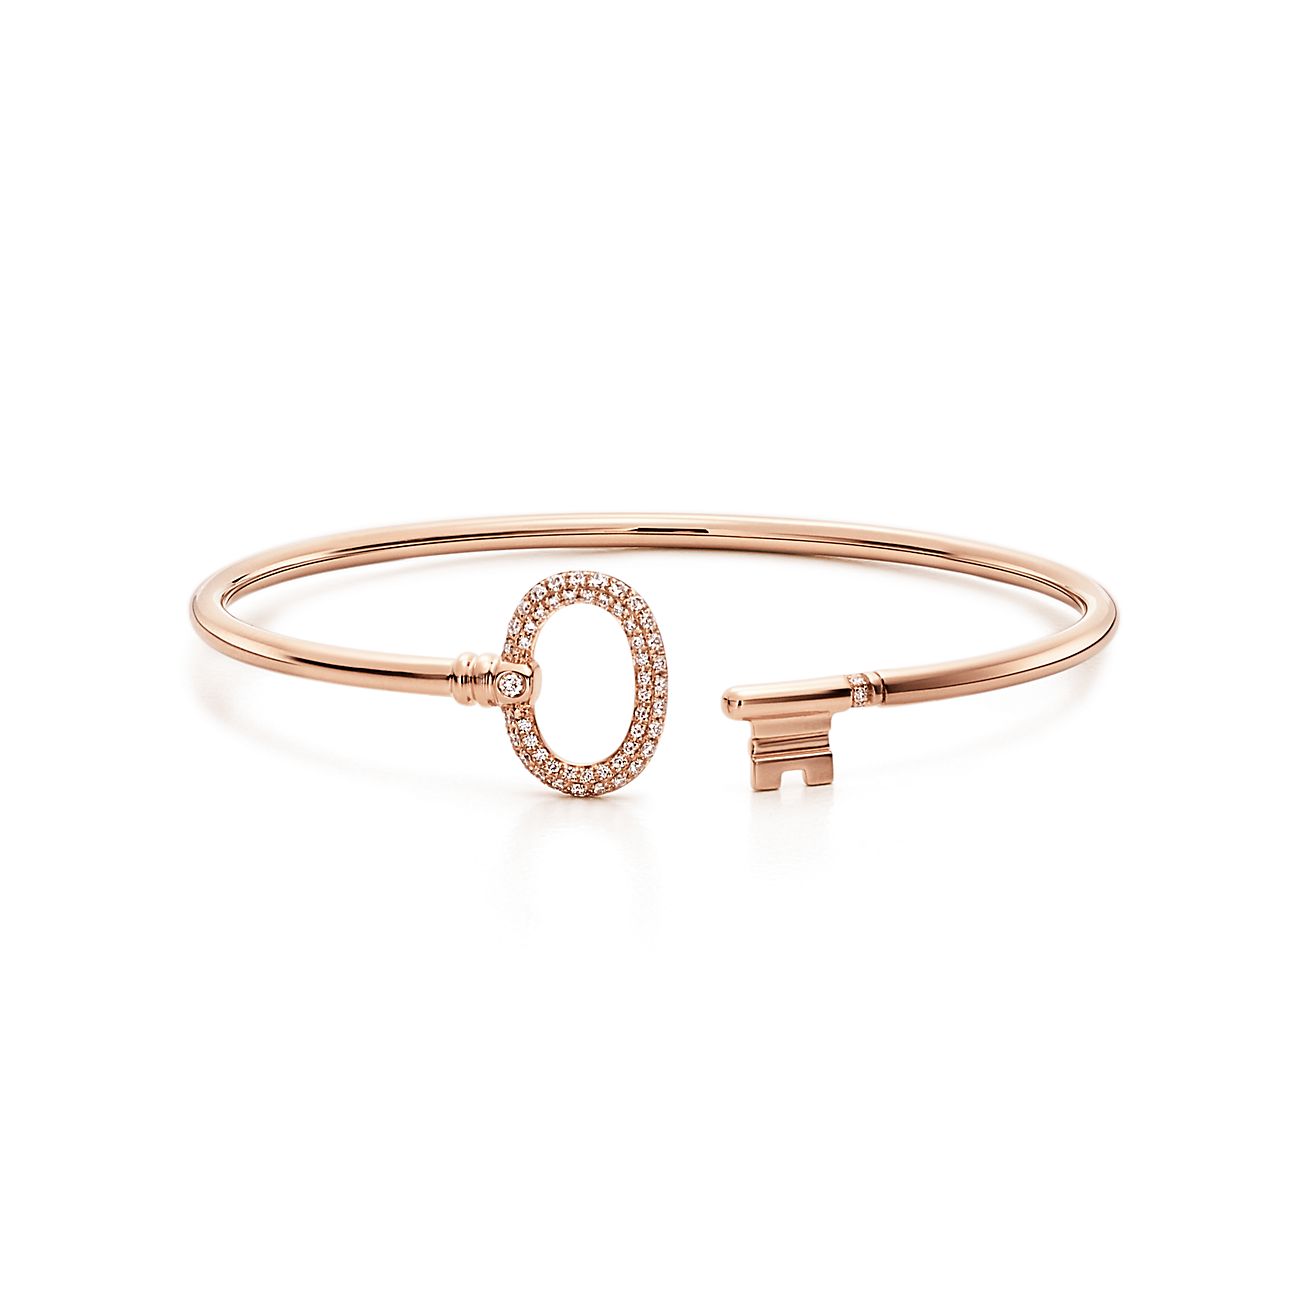 Tiffany Keys wire oval bracelet in 18k 